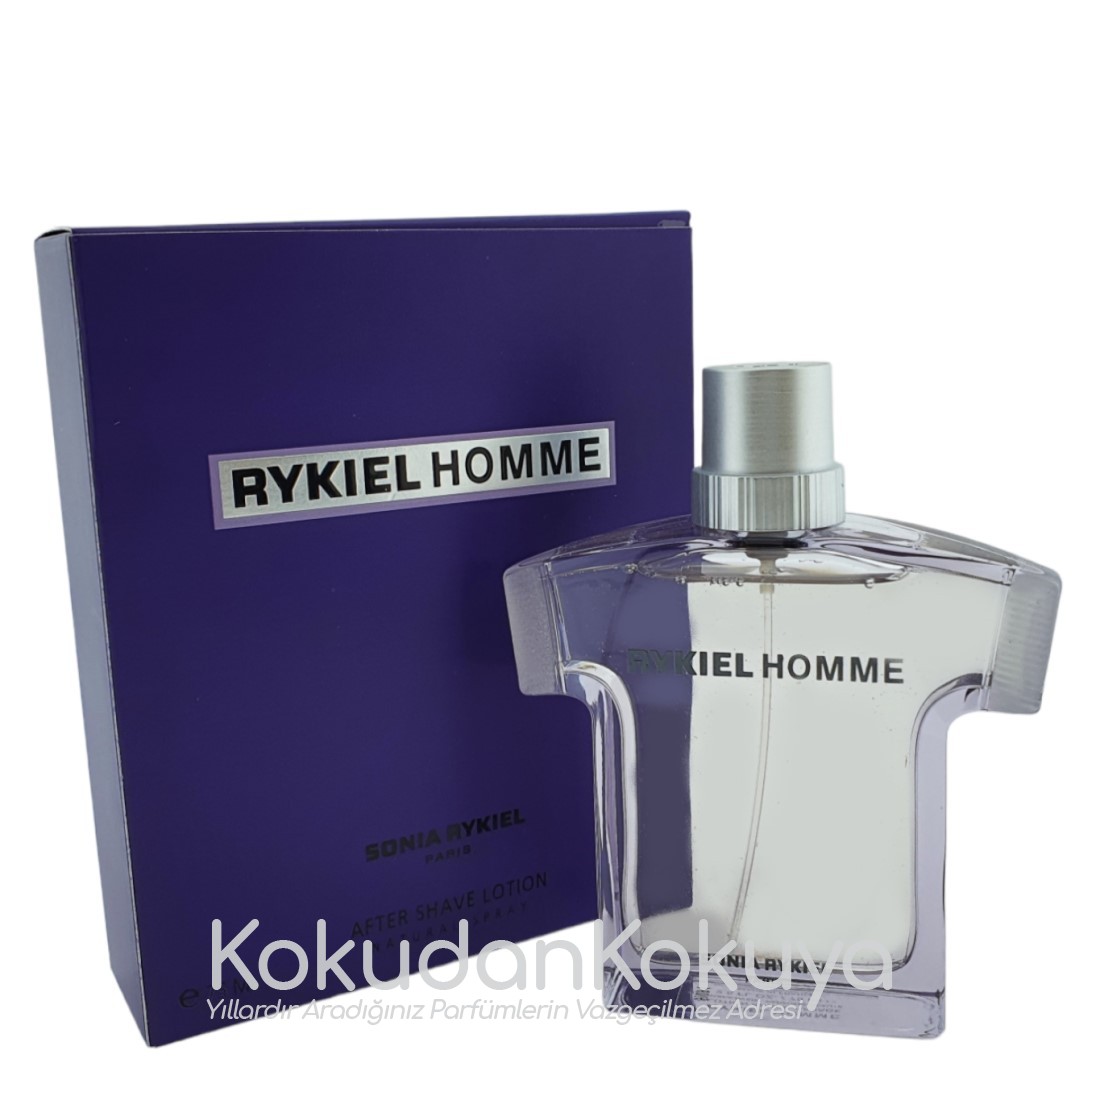 SONIA RYKIEL Rykiel Homme (Vintage) Erkek Cilt Bakım Ürünleri Erkek 75ml Traş Losyonu Sprey 